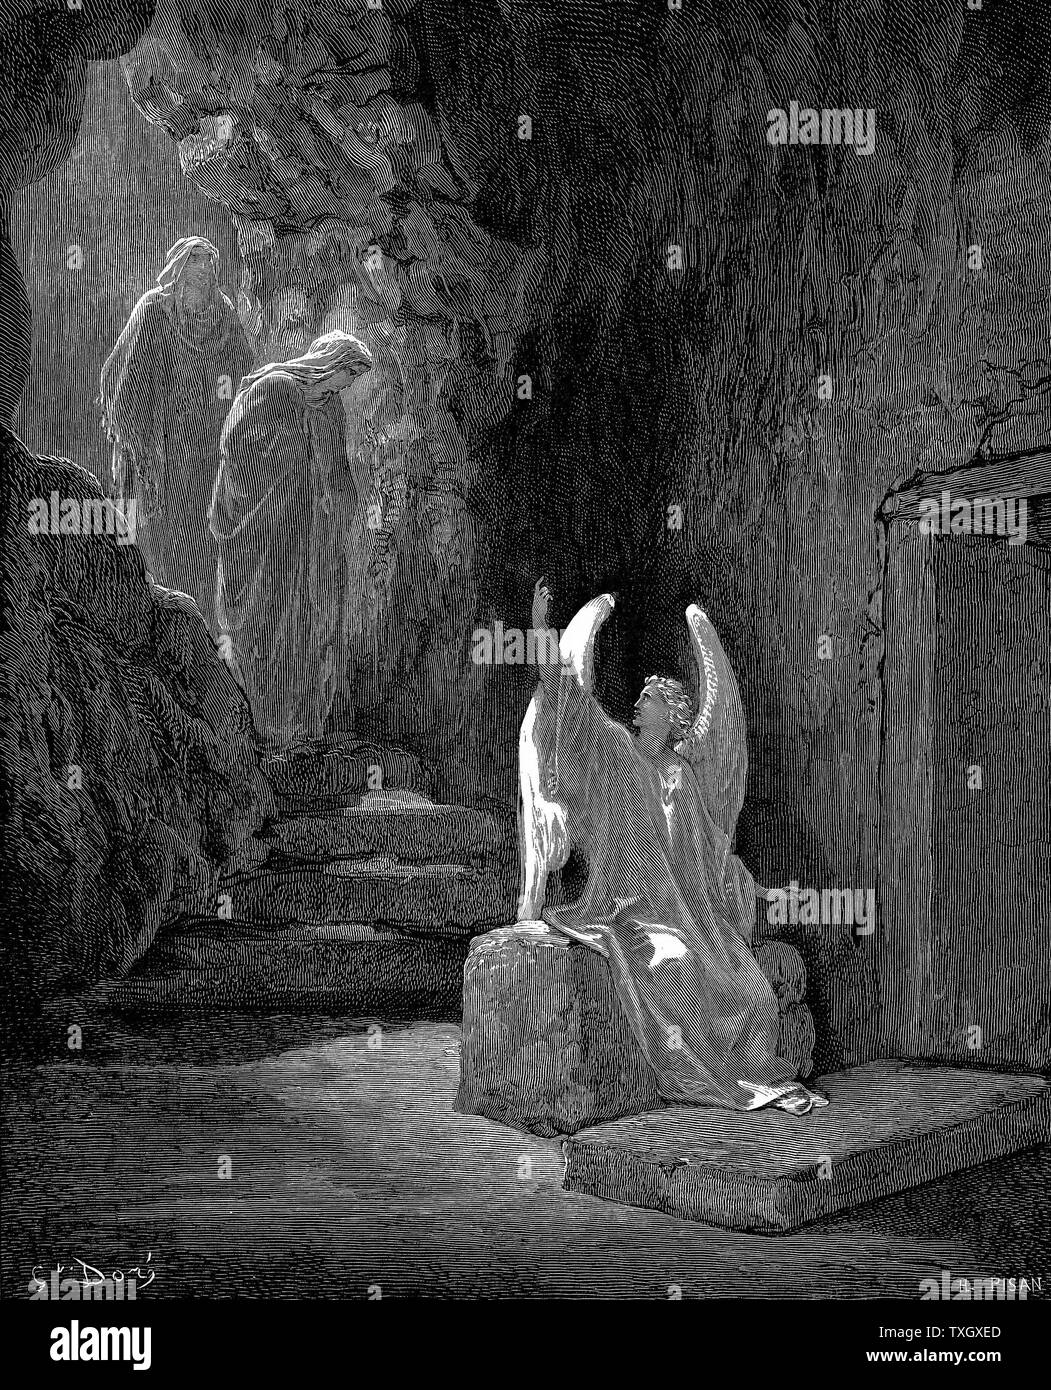 Angelo mostra Maria Maddalena e 'l'altra Maria' tomba vuota di Cristo. Contrassegnare 16.5. Da Gustave Doré illustrato "bibbia" 1865-1866 incisione su legno Foto Stock